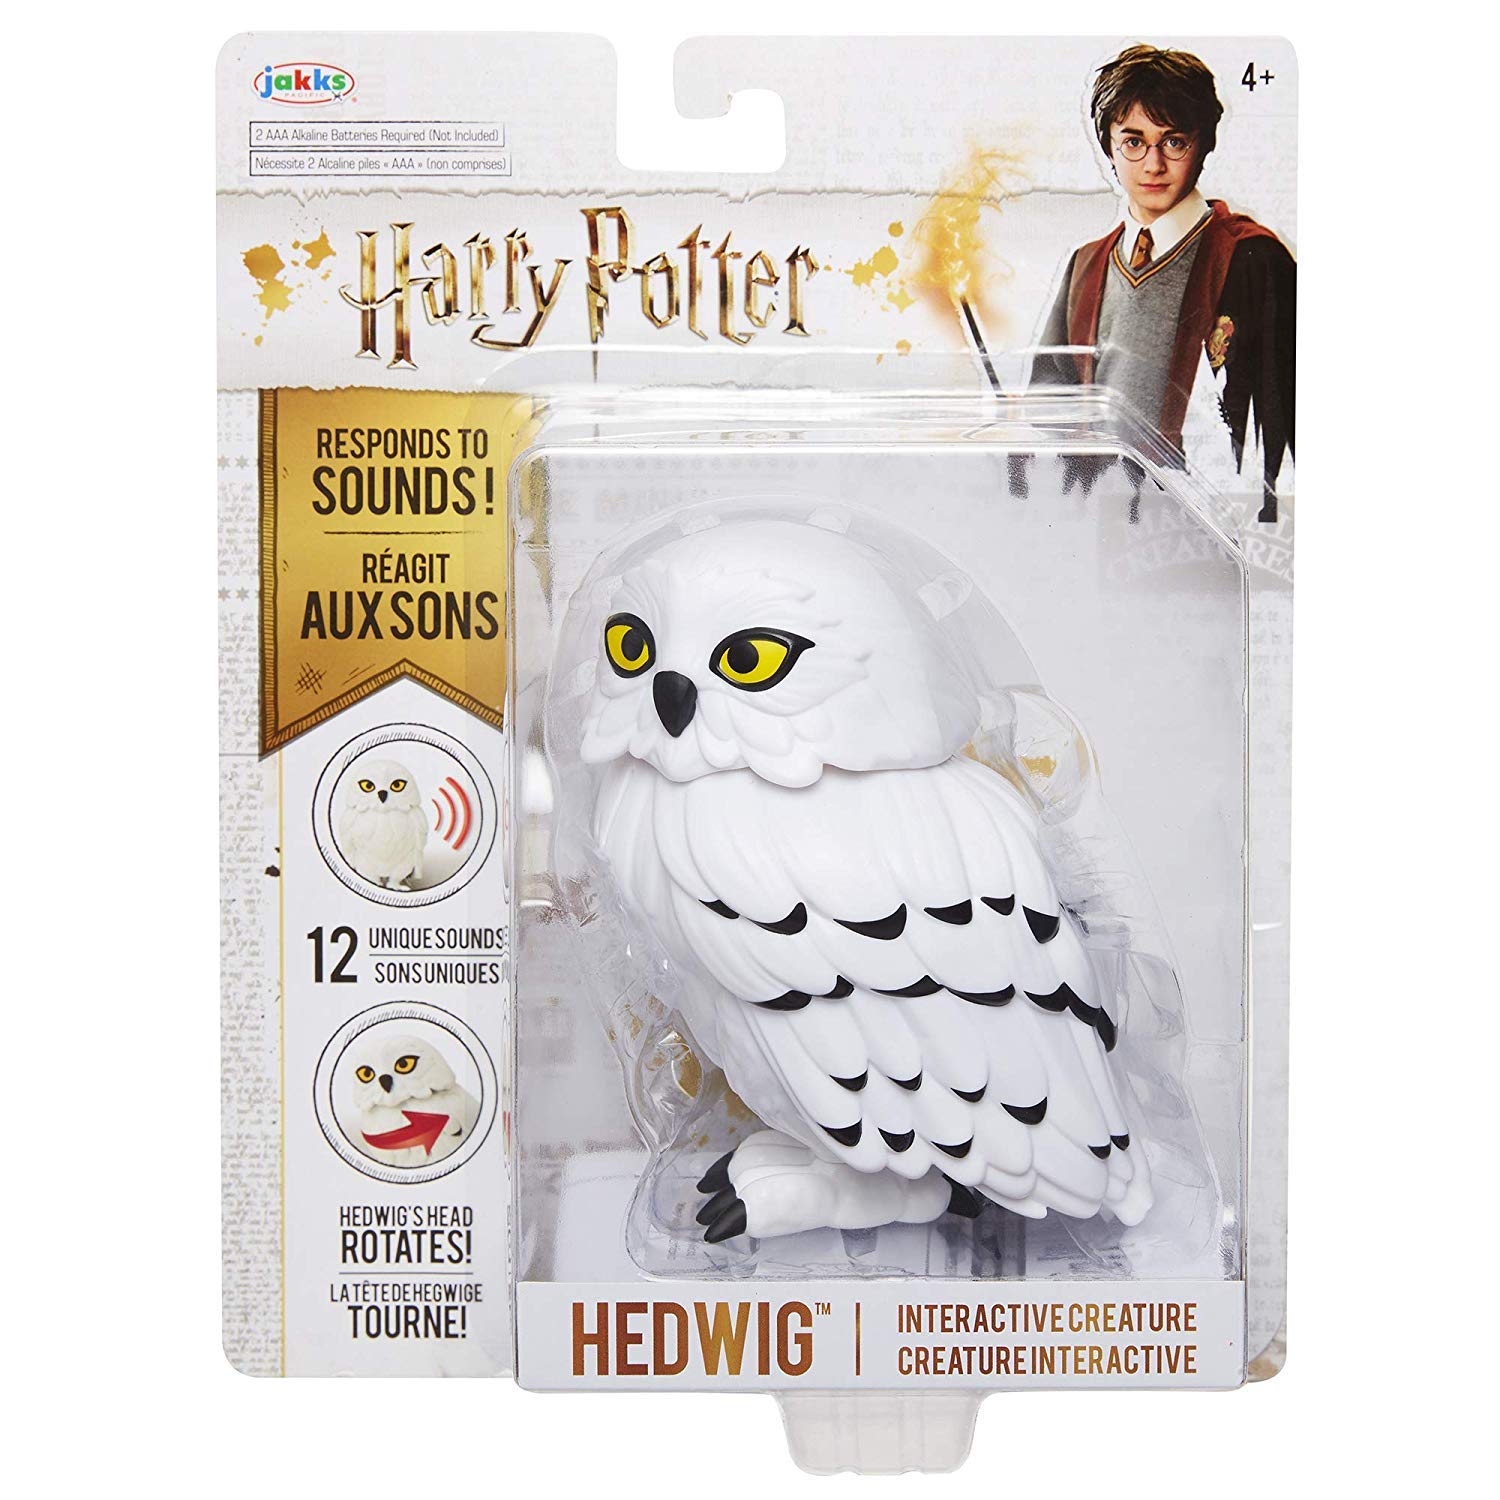 Realistische Hedwig Owl Toy Mini Simulation Modell 2019 Weihnachtsgeschenk P0W8 